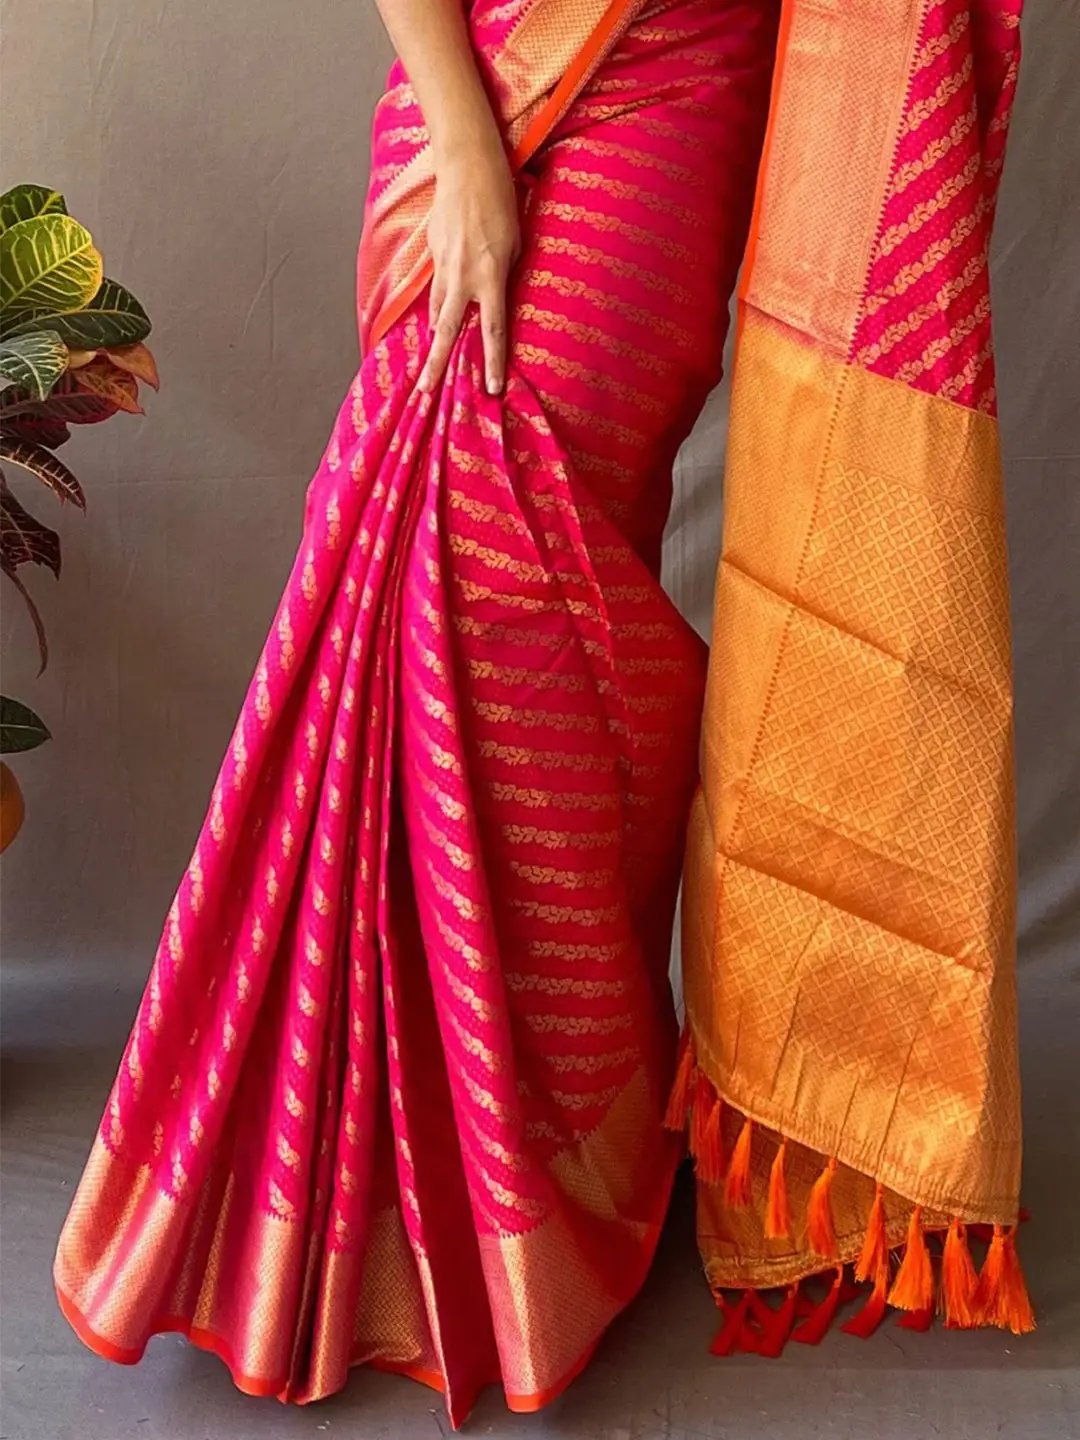  Traditional Hot Pink Colour Patola Saree